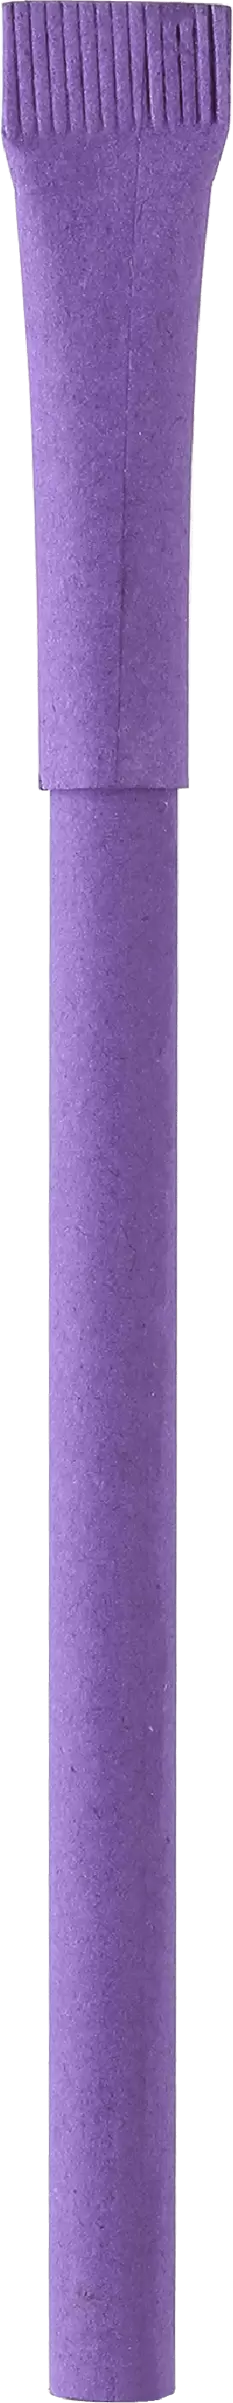 Ручка KRAFT Фиолетовая 3010.11